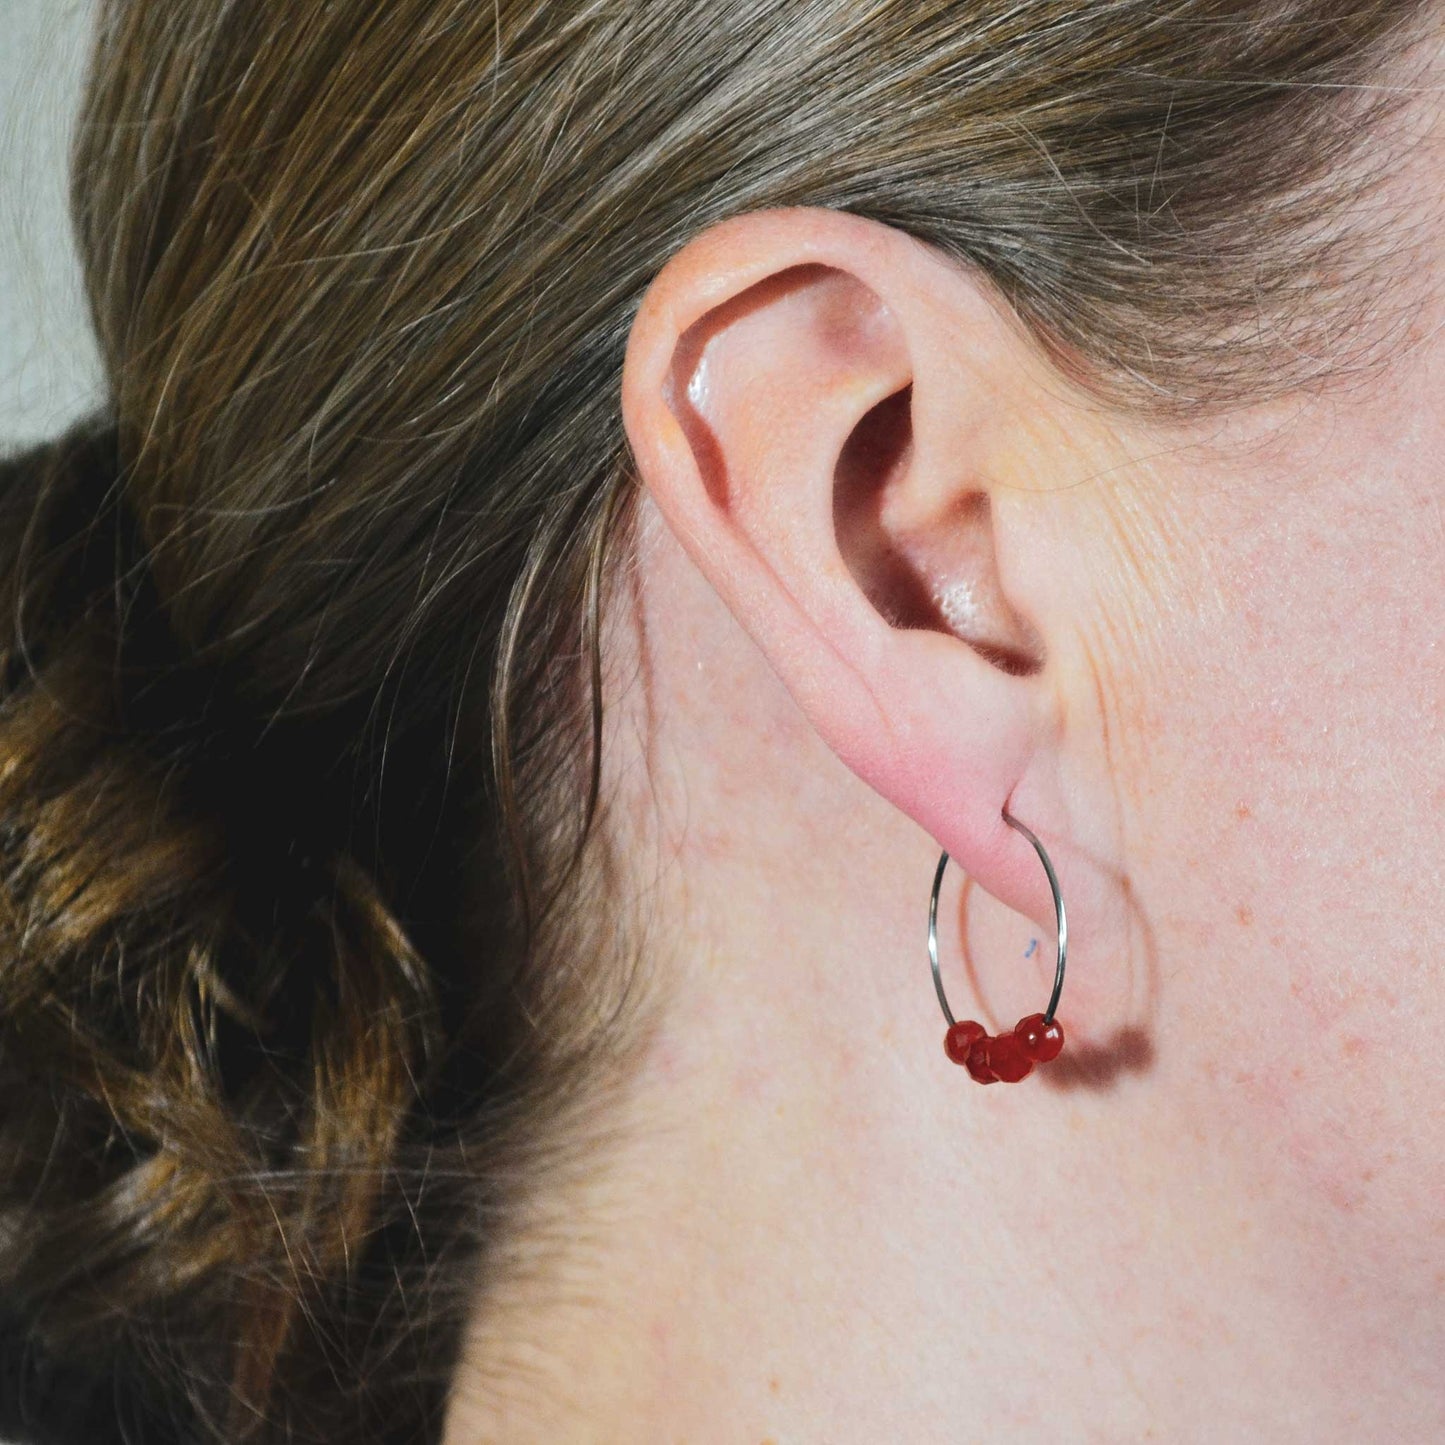 Woman wearing orange Carnelian gemstone hoop earring in lobe